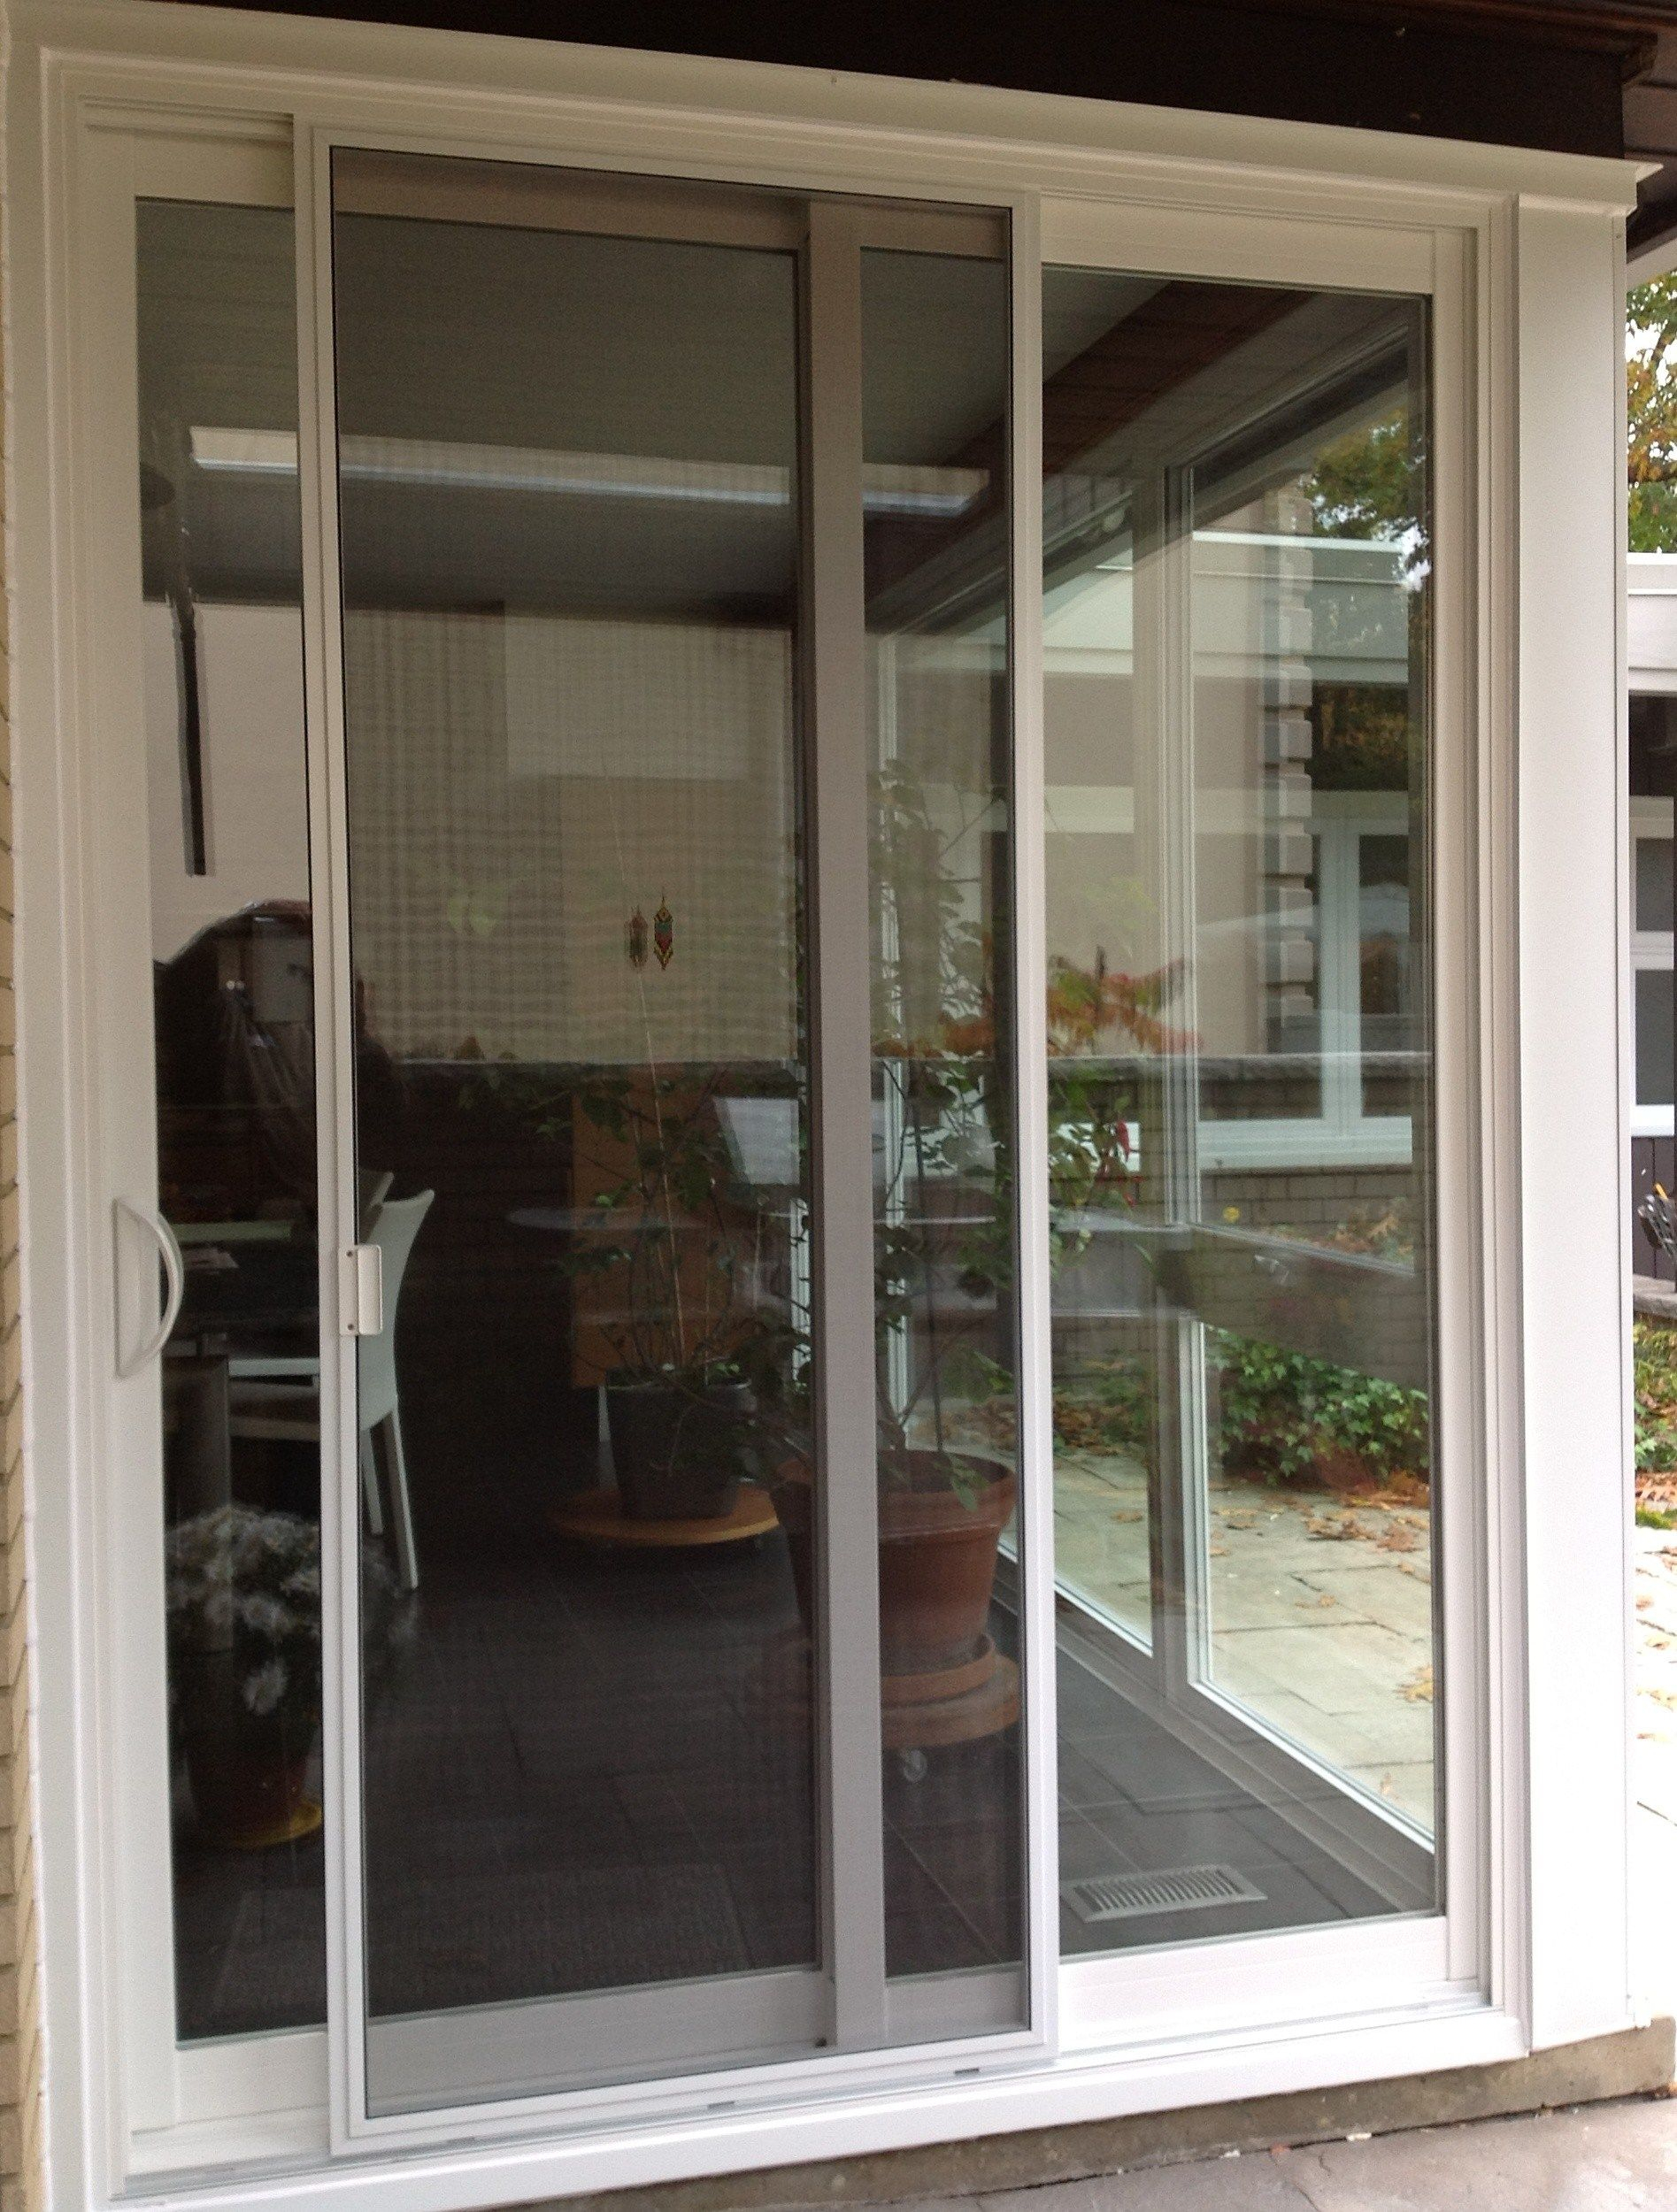 Best Of Door Handles For Sliding Glass Doors Home Decor for size 1895 X 2500